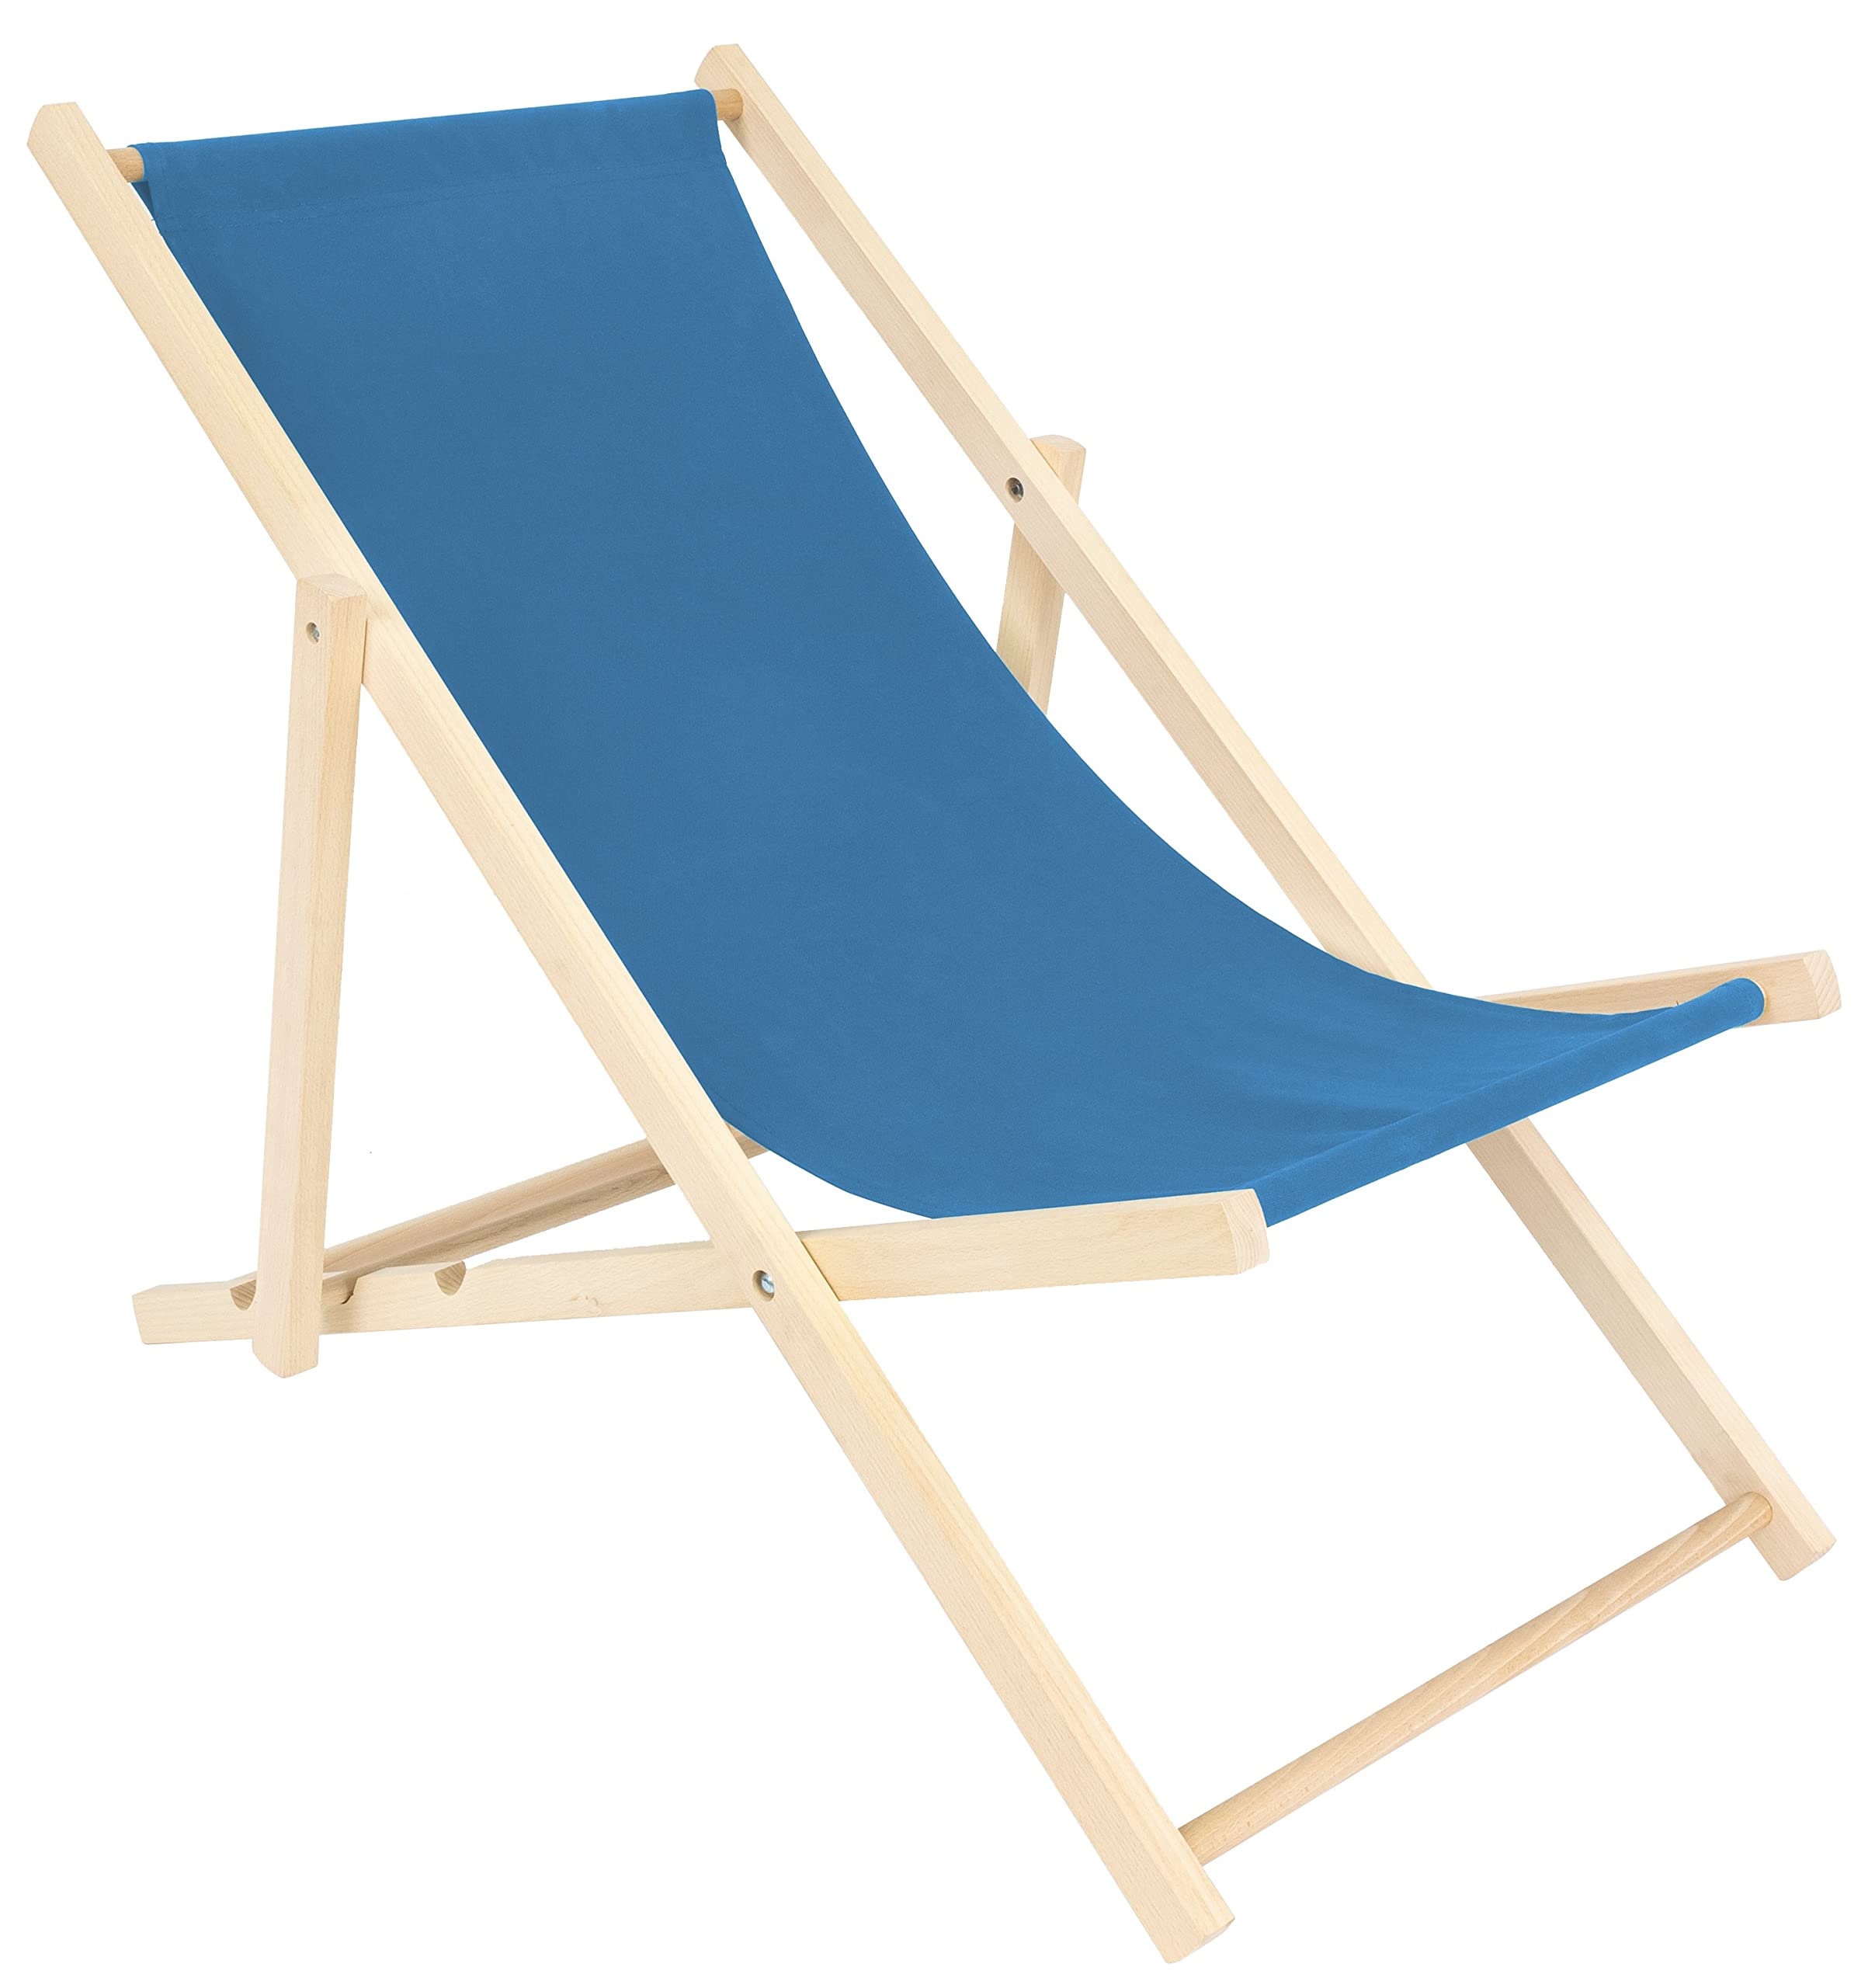 spec-wood Liege - Liegestuhl klappbar - Holzliegestuhl - RelaxLiege - Camping Stuhl - GartenLiege - wetterfest SonnenLiege - klappbar 119 cm x 58 cm Farbe Blau - Klappstuhl Holz